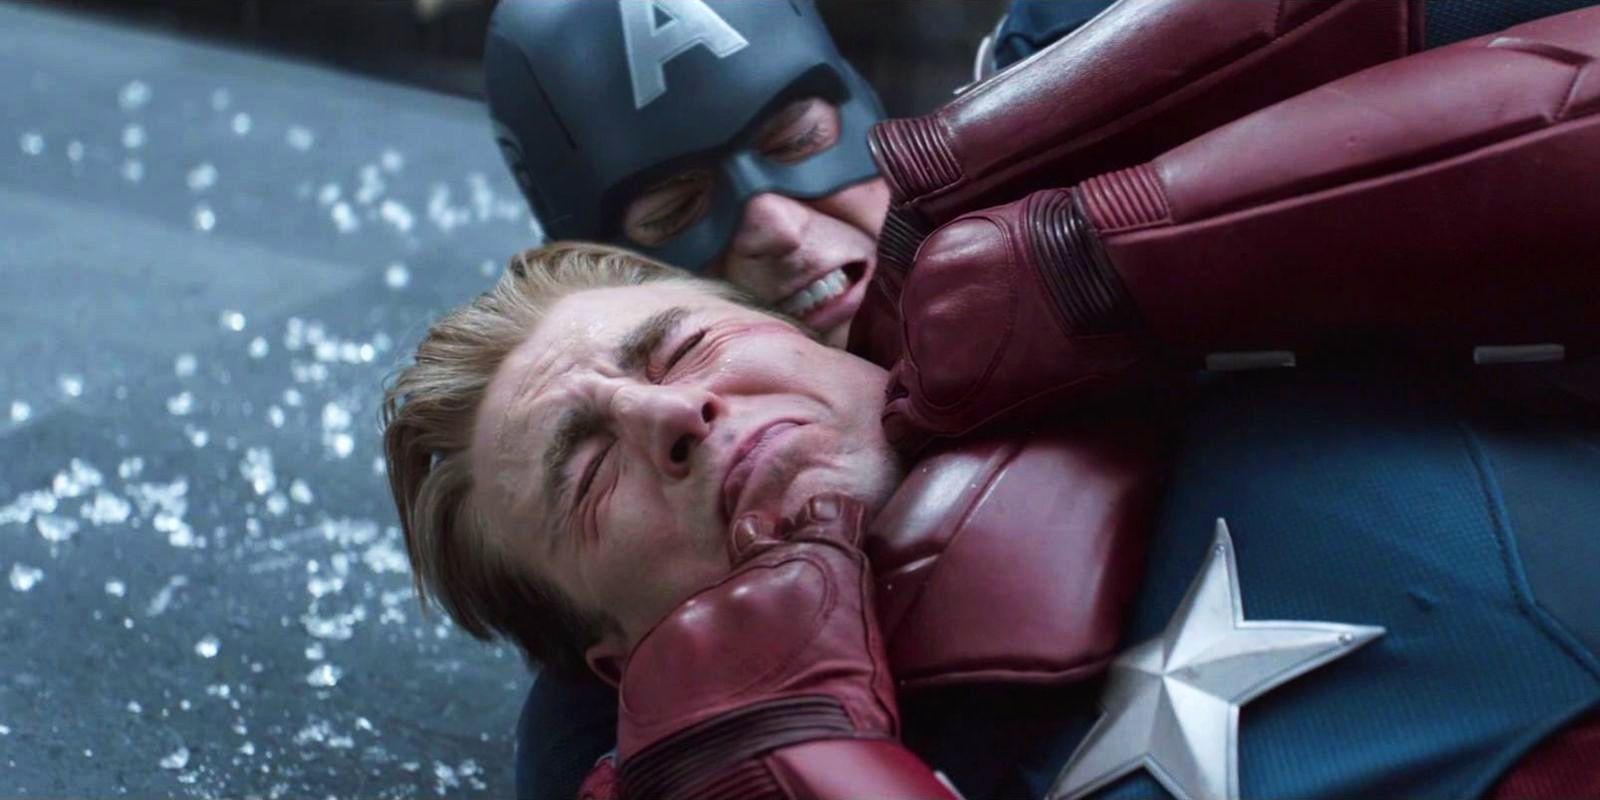 Chris Evans as Captain America fighting himself in Avengers Endgame